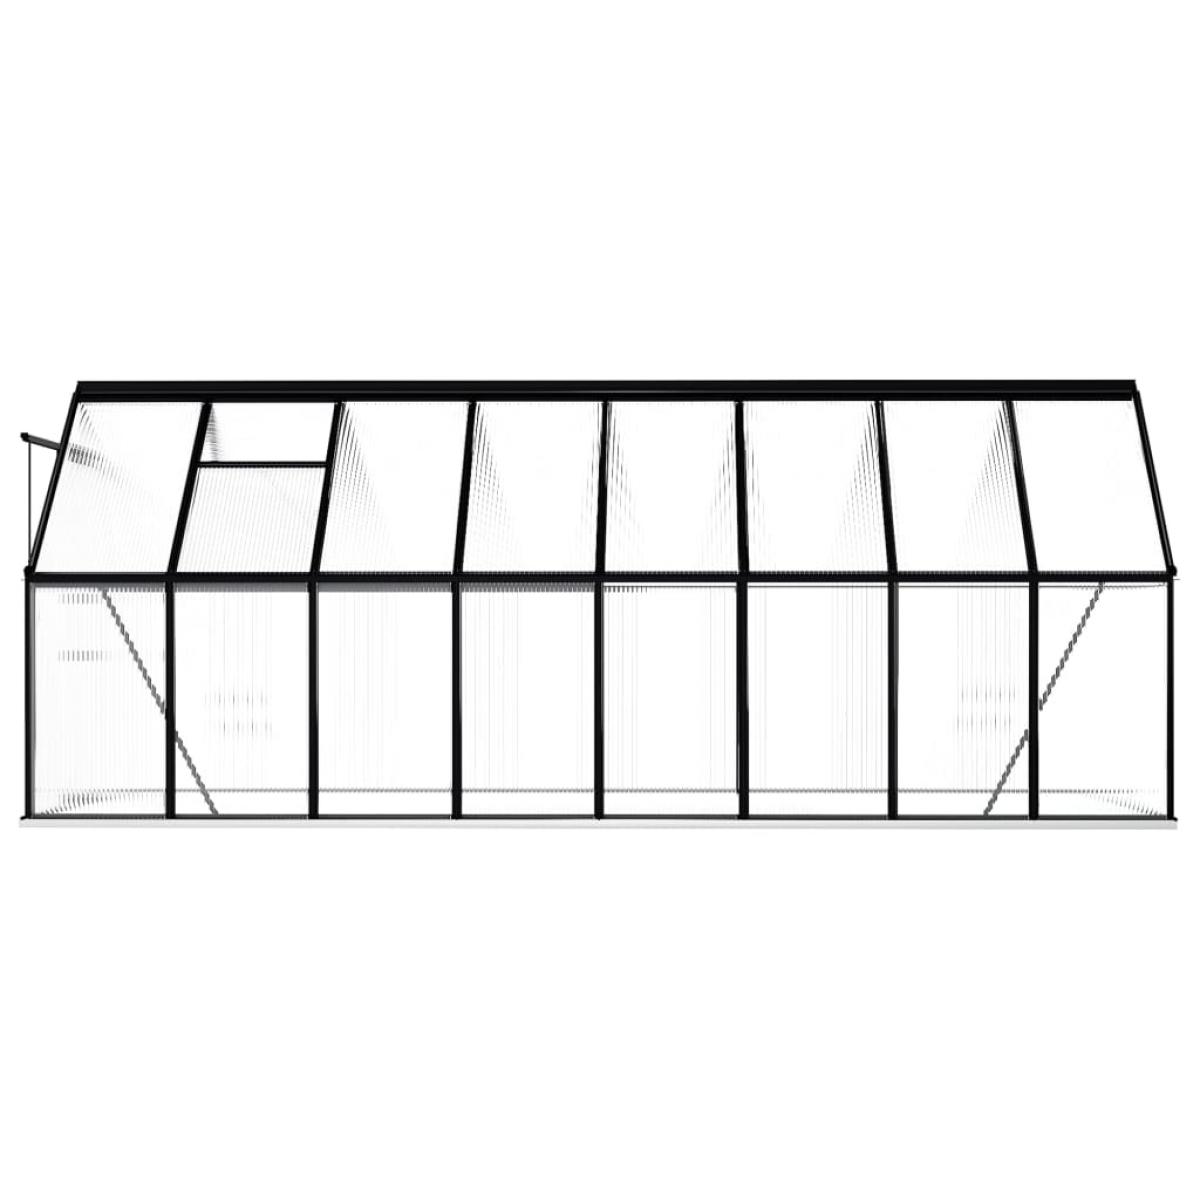 Invernadero con estructura base aluminio gris antracita 9,31 m²